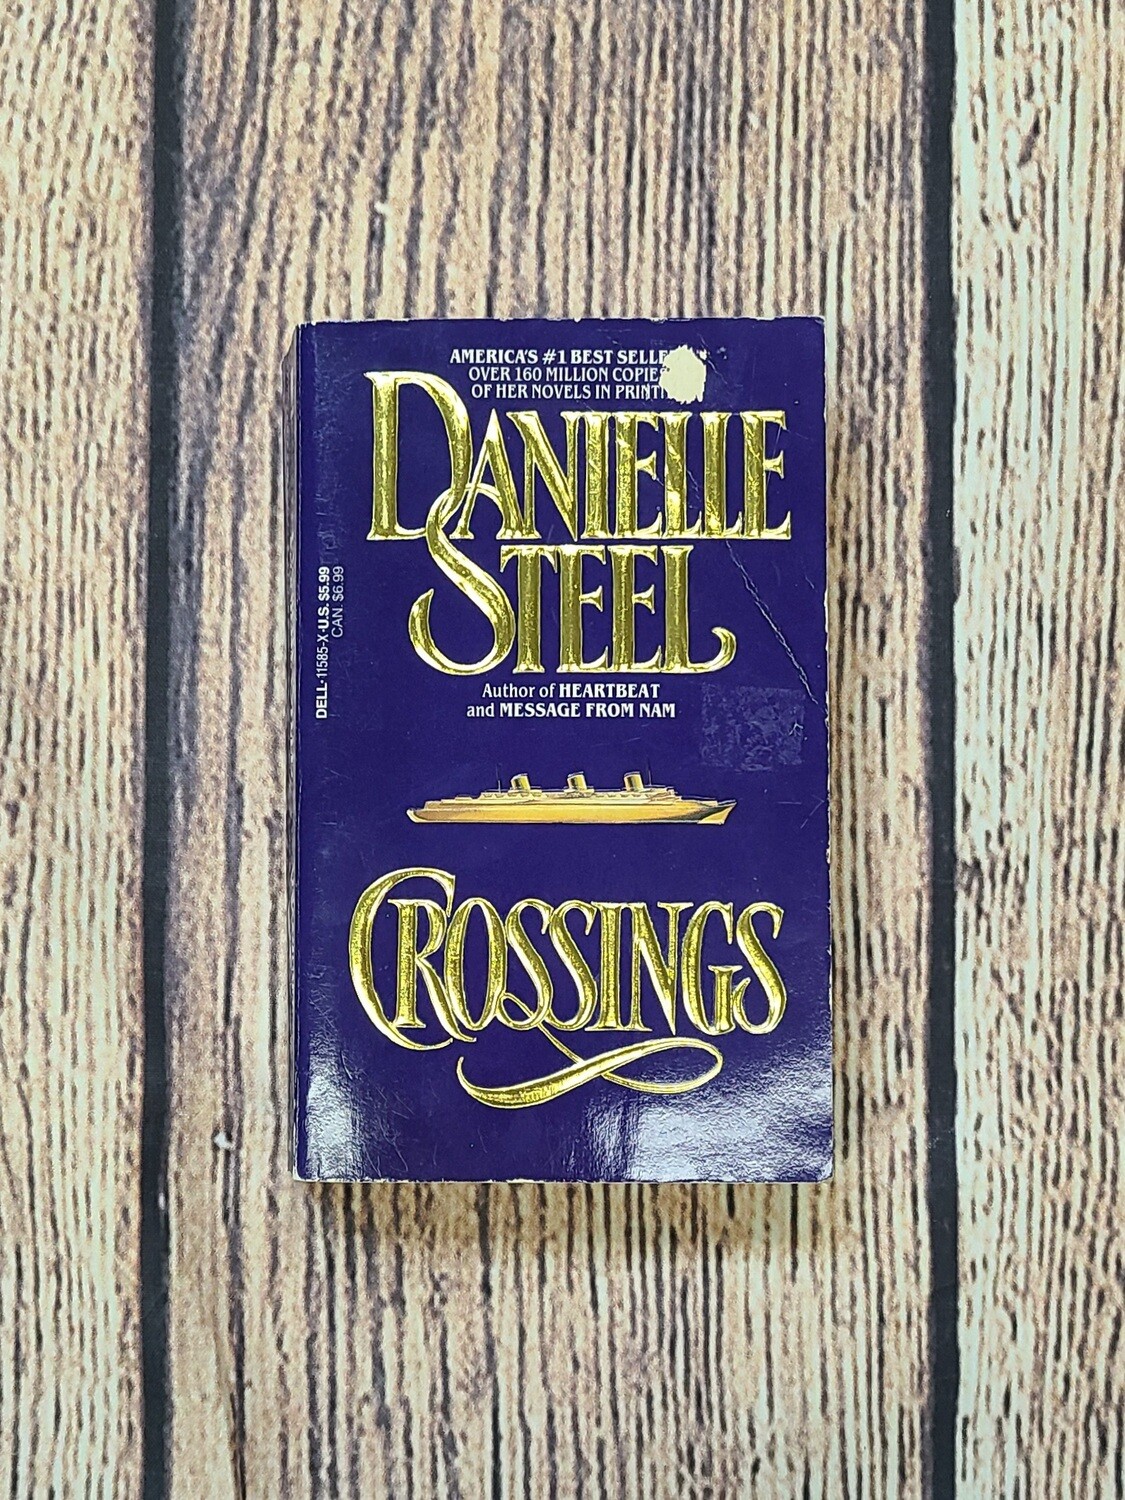 Crossings by Danielle Steel